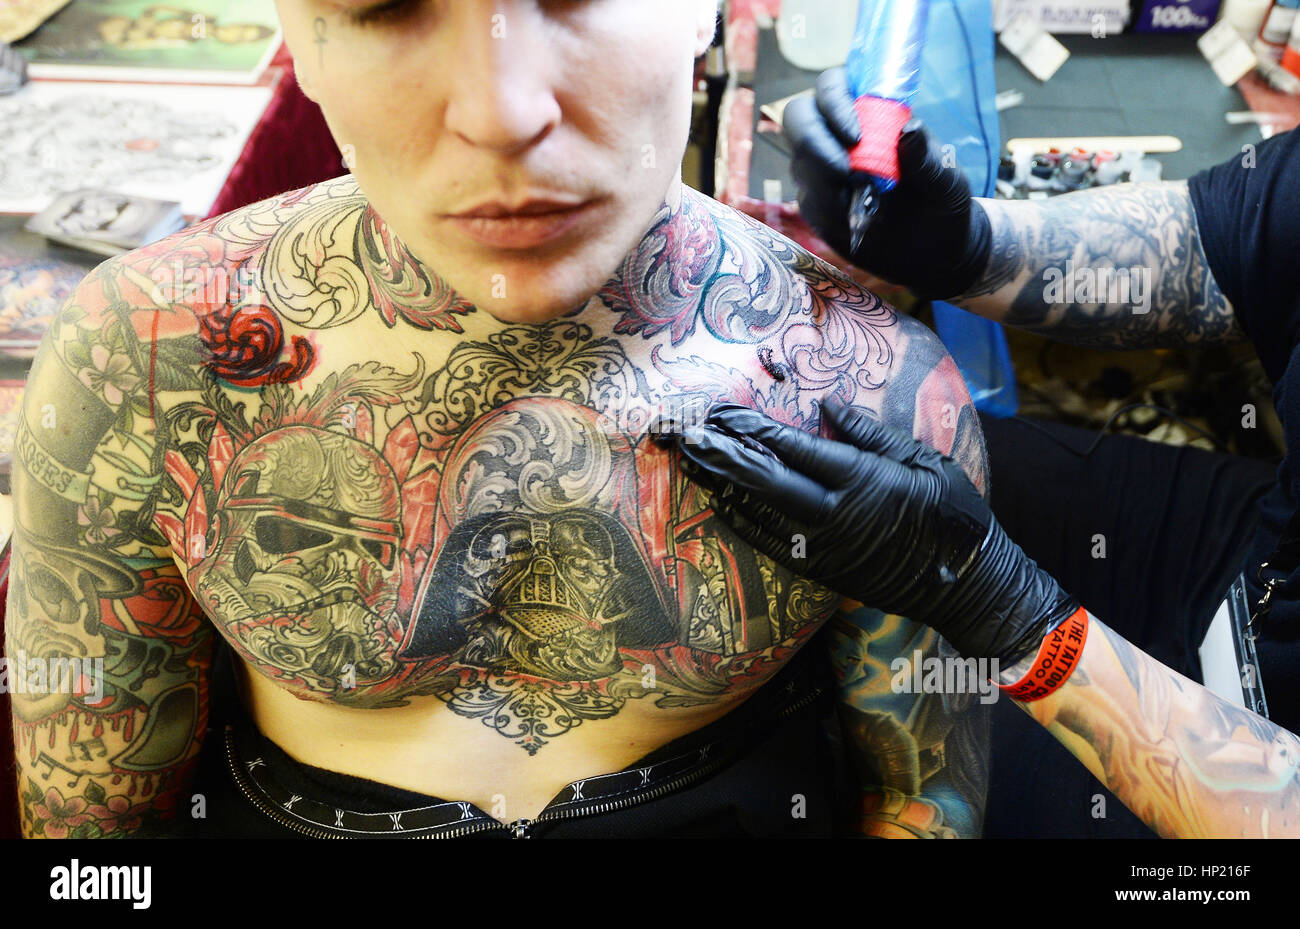 East London Tattoo - Vegan Tattoo - Geometric Tattoo Artist - Piercing |  Geometric tattoo, London tattoo, Vegan tattoo